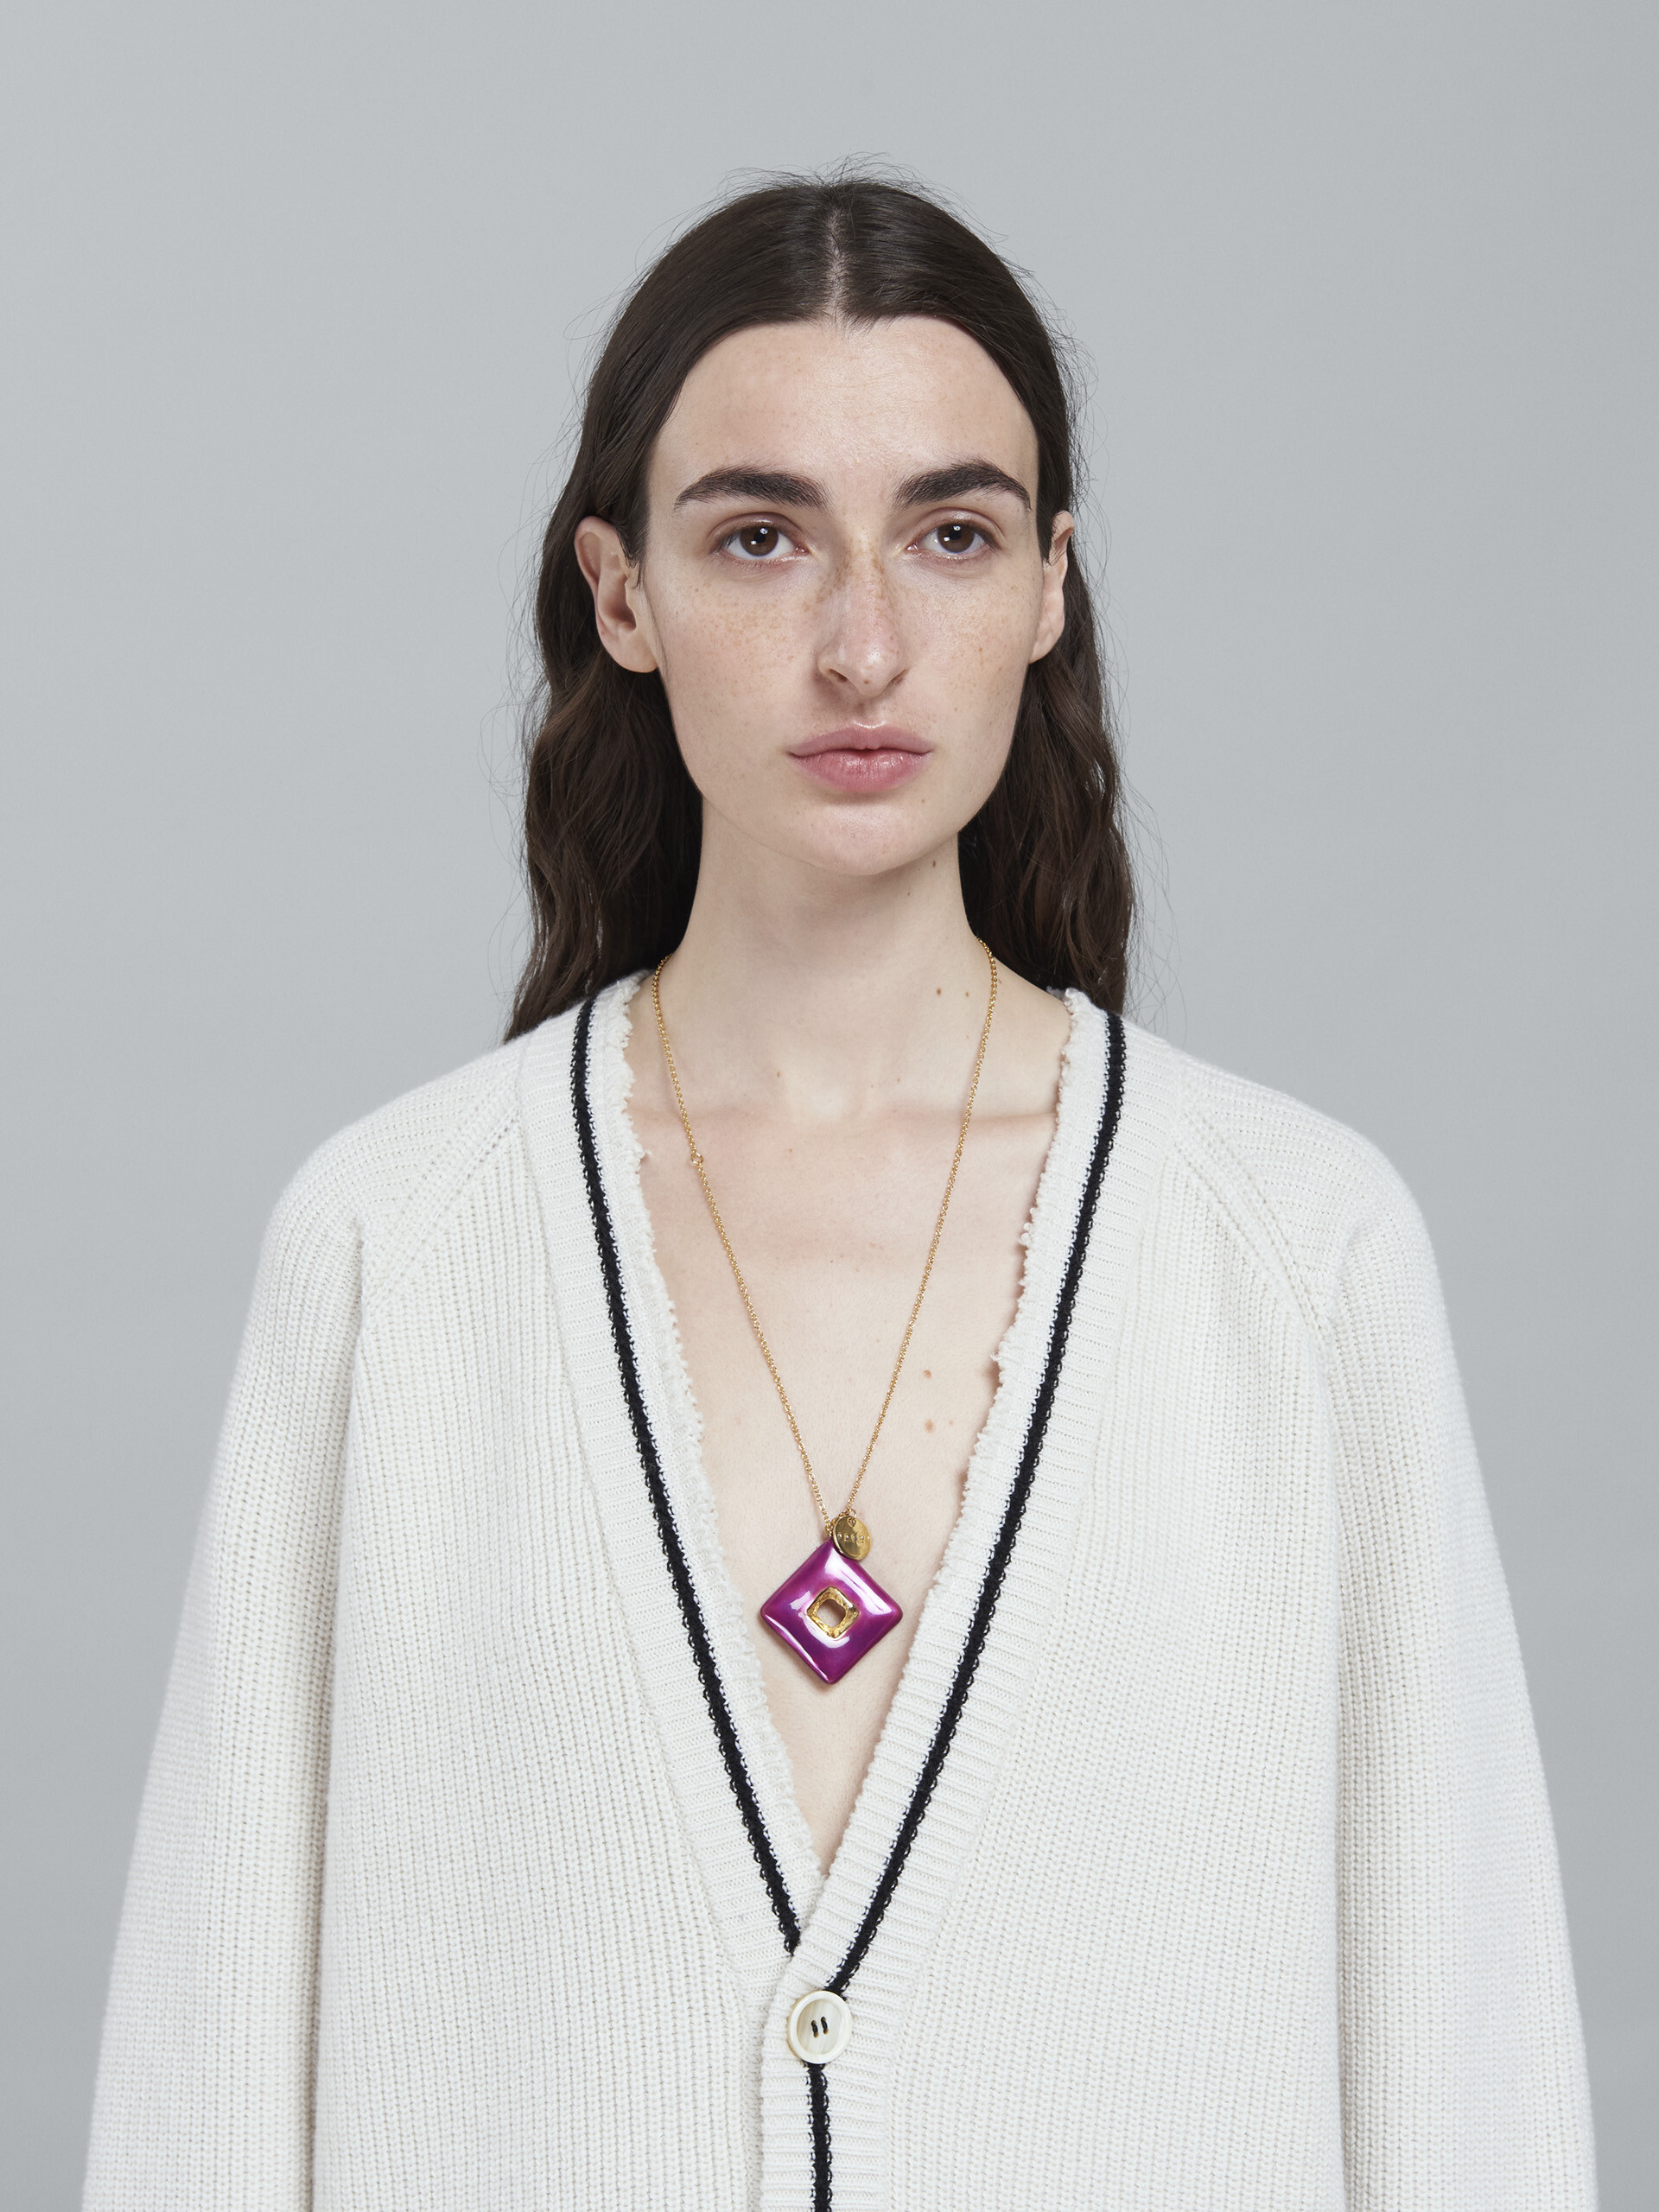 TRAPEZE purple necklace - Necklaces - Image 2